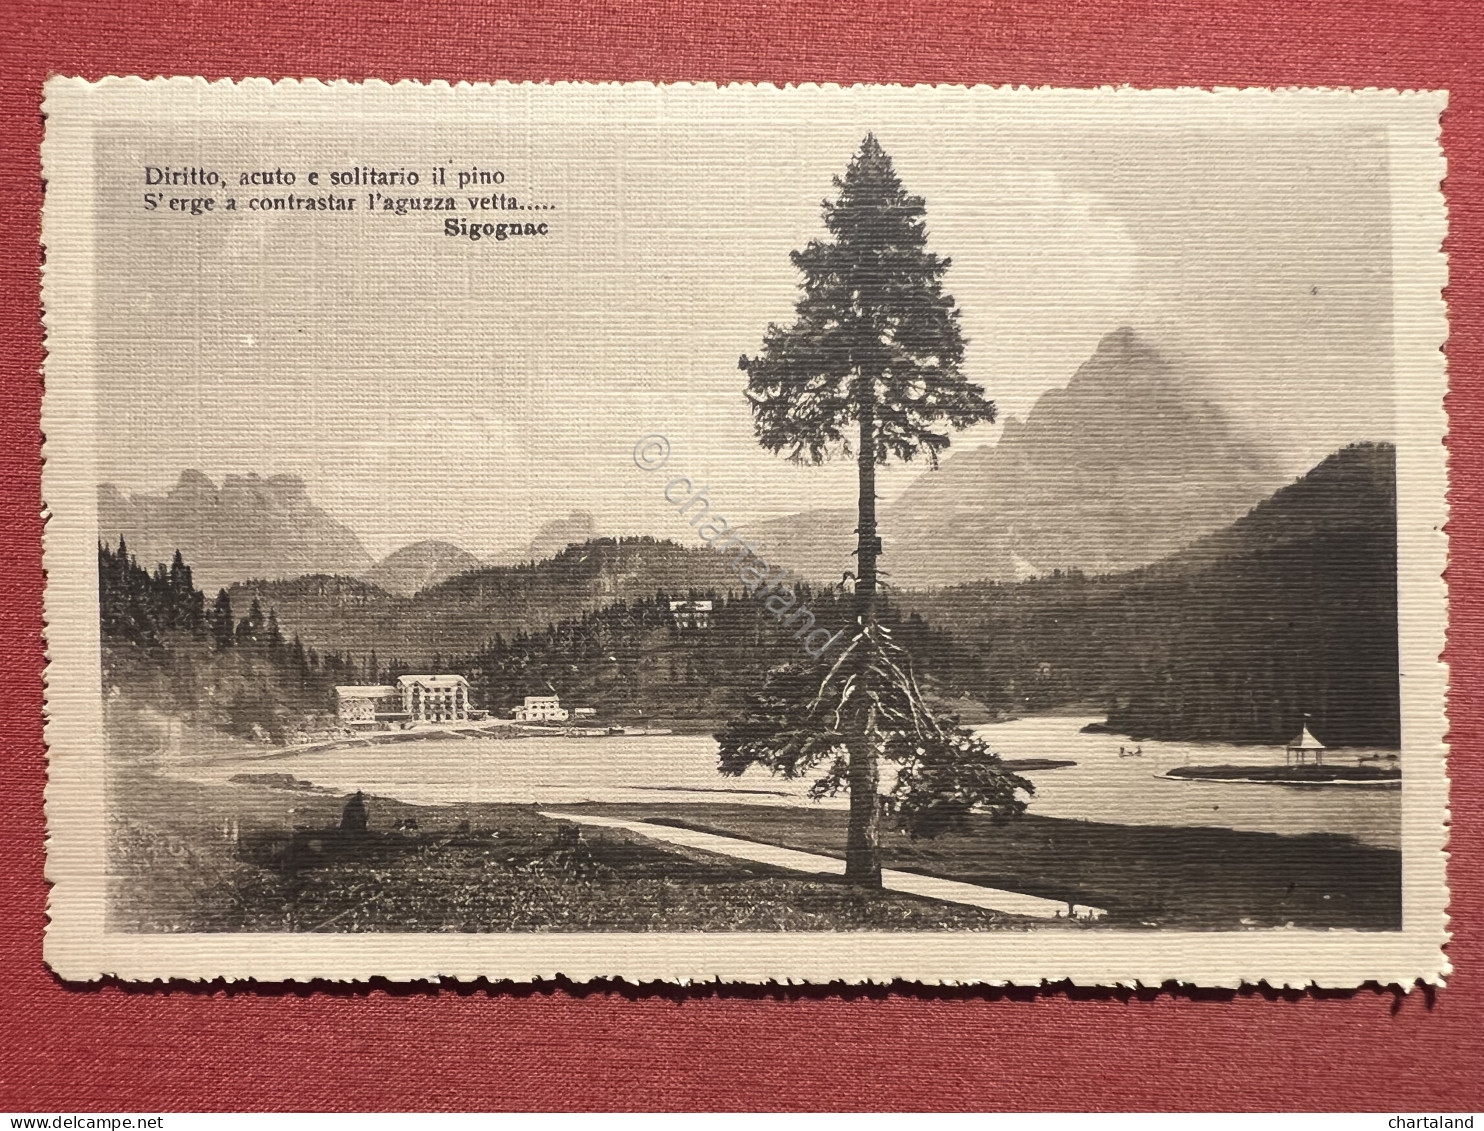 Cartolina - Lago Di Misurina ( Belluno ) - 1920 Ca. - Belluno